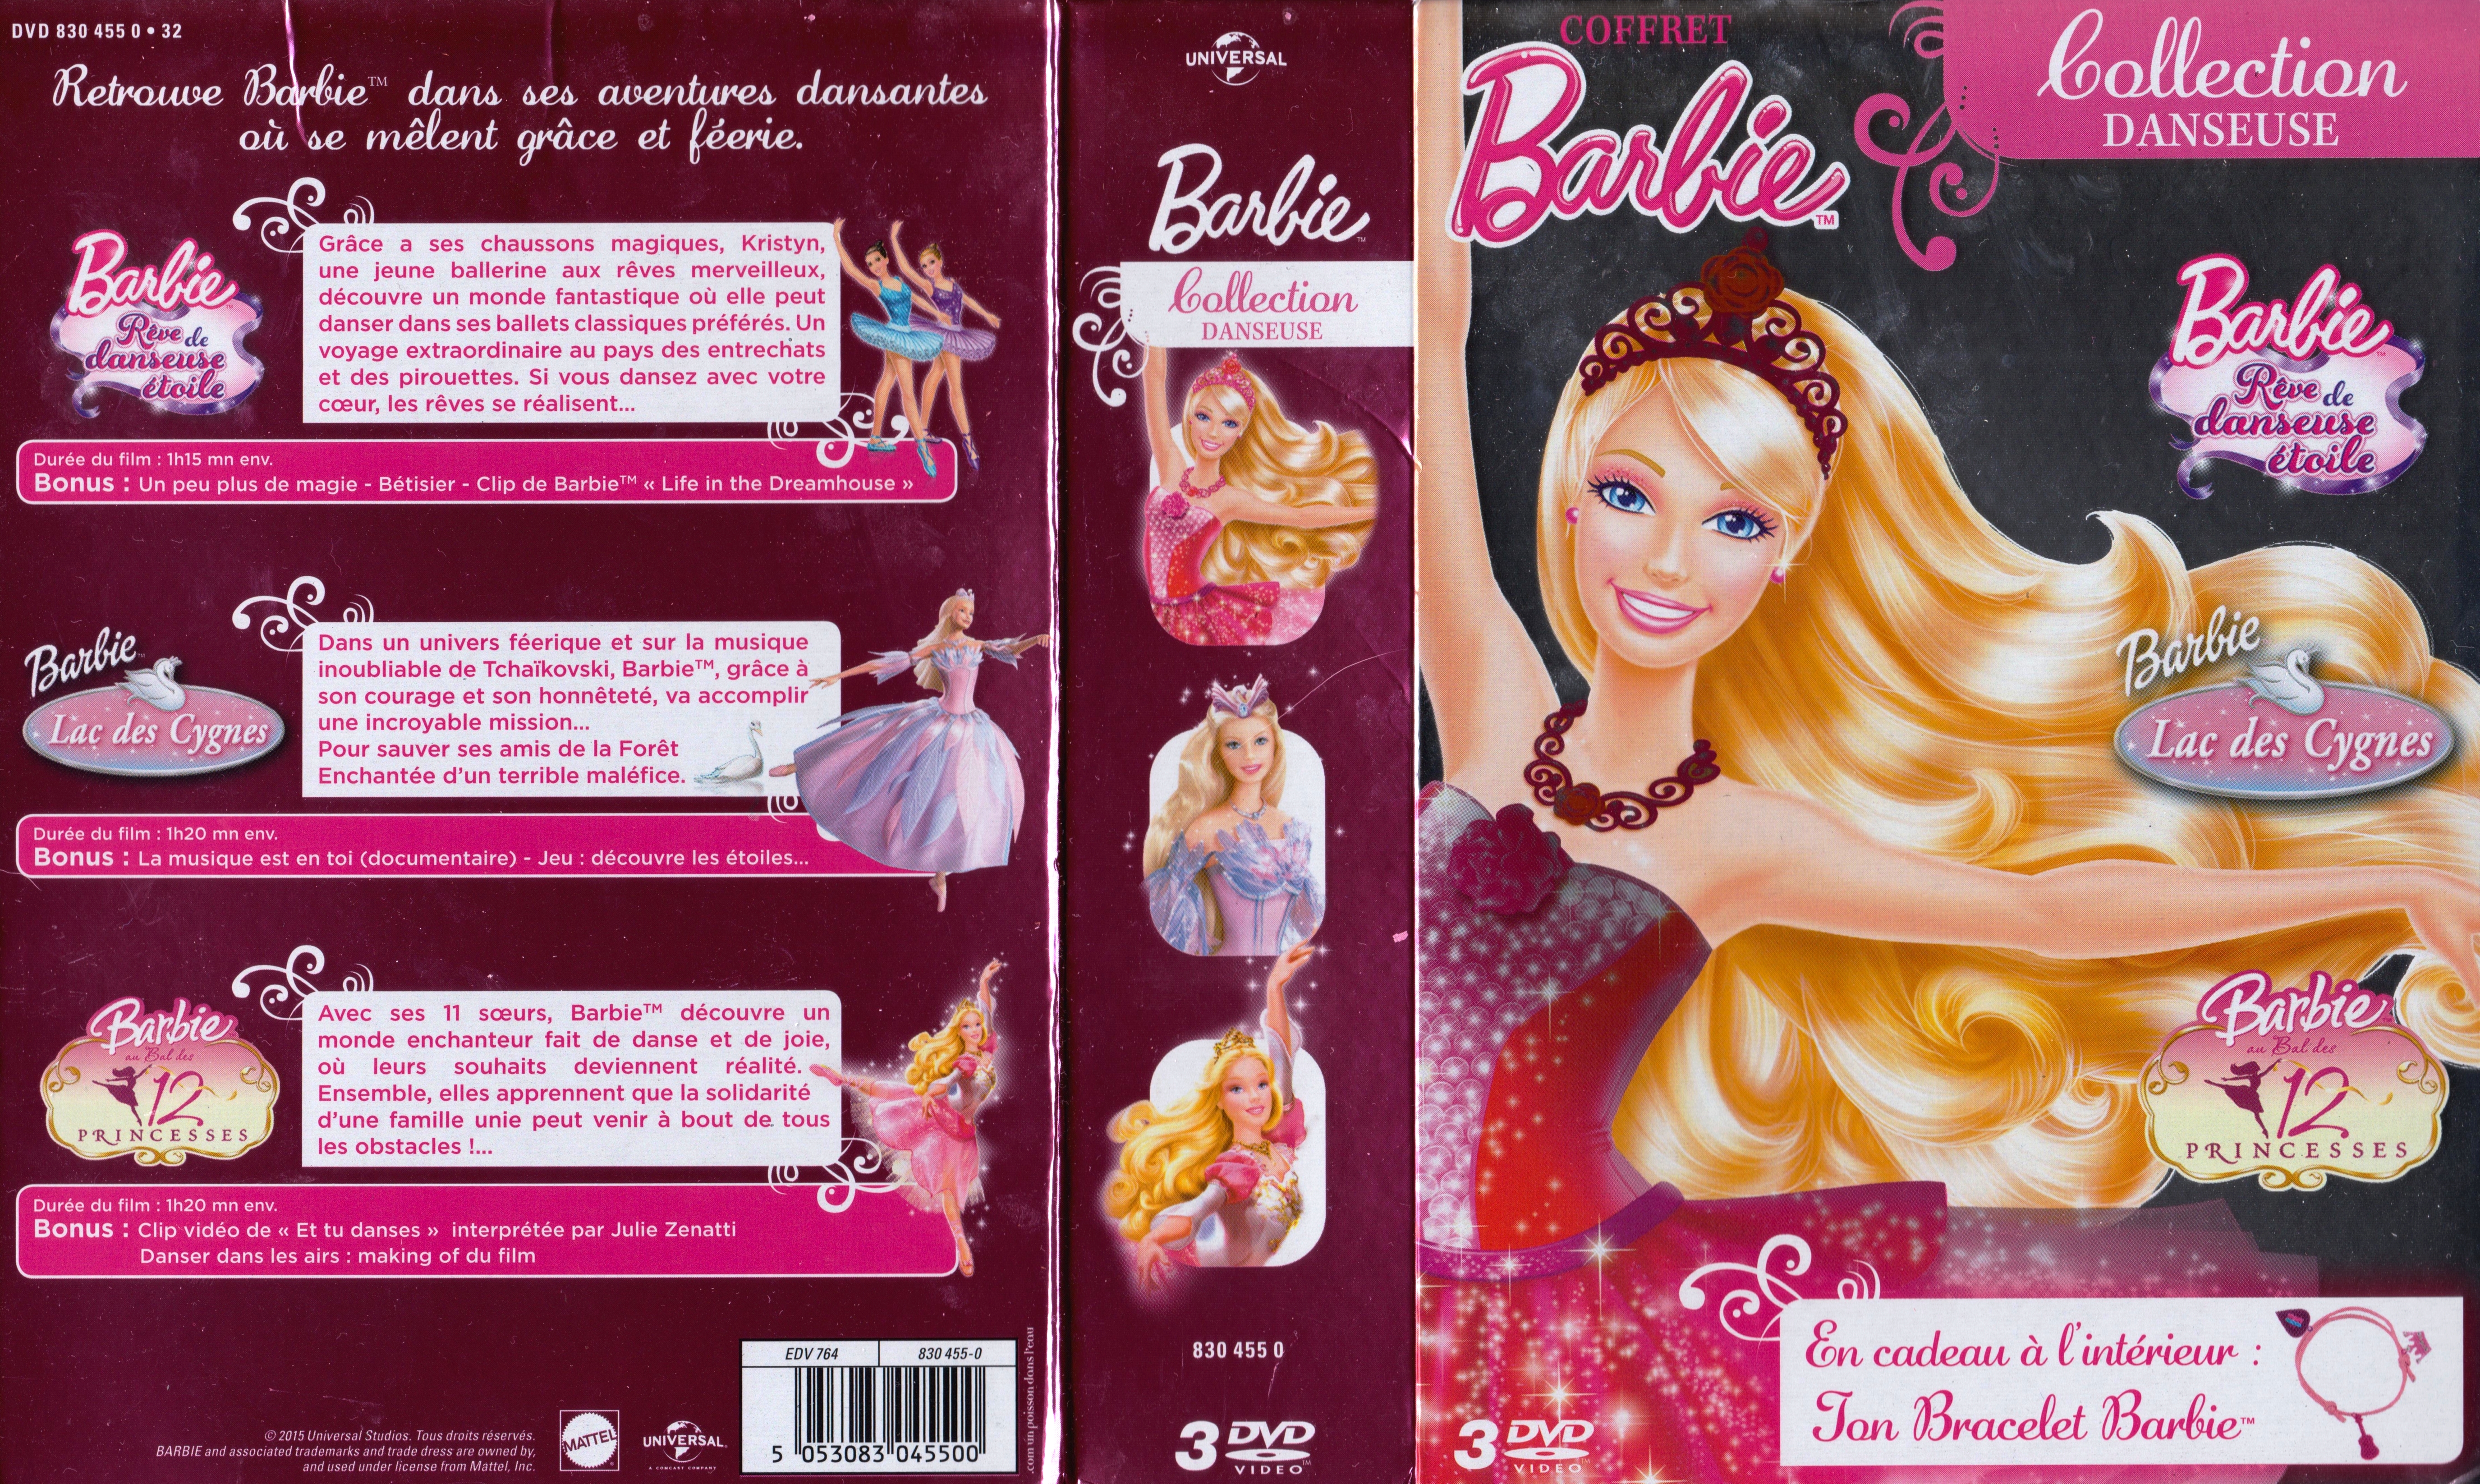 Jaquette DVD Barbie Coffret Collection Danseuse